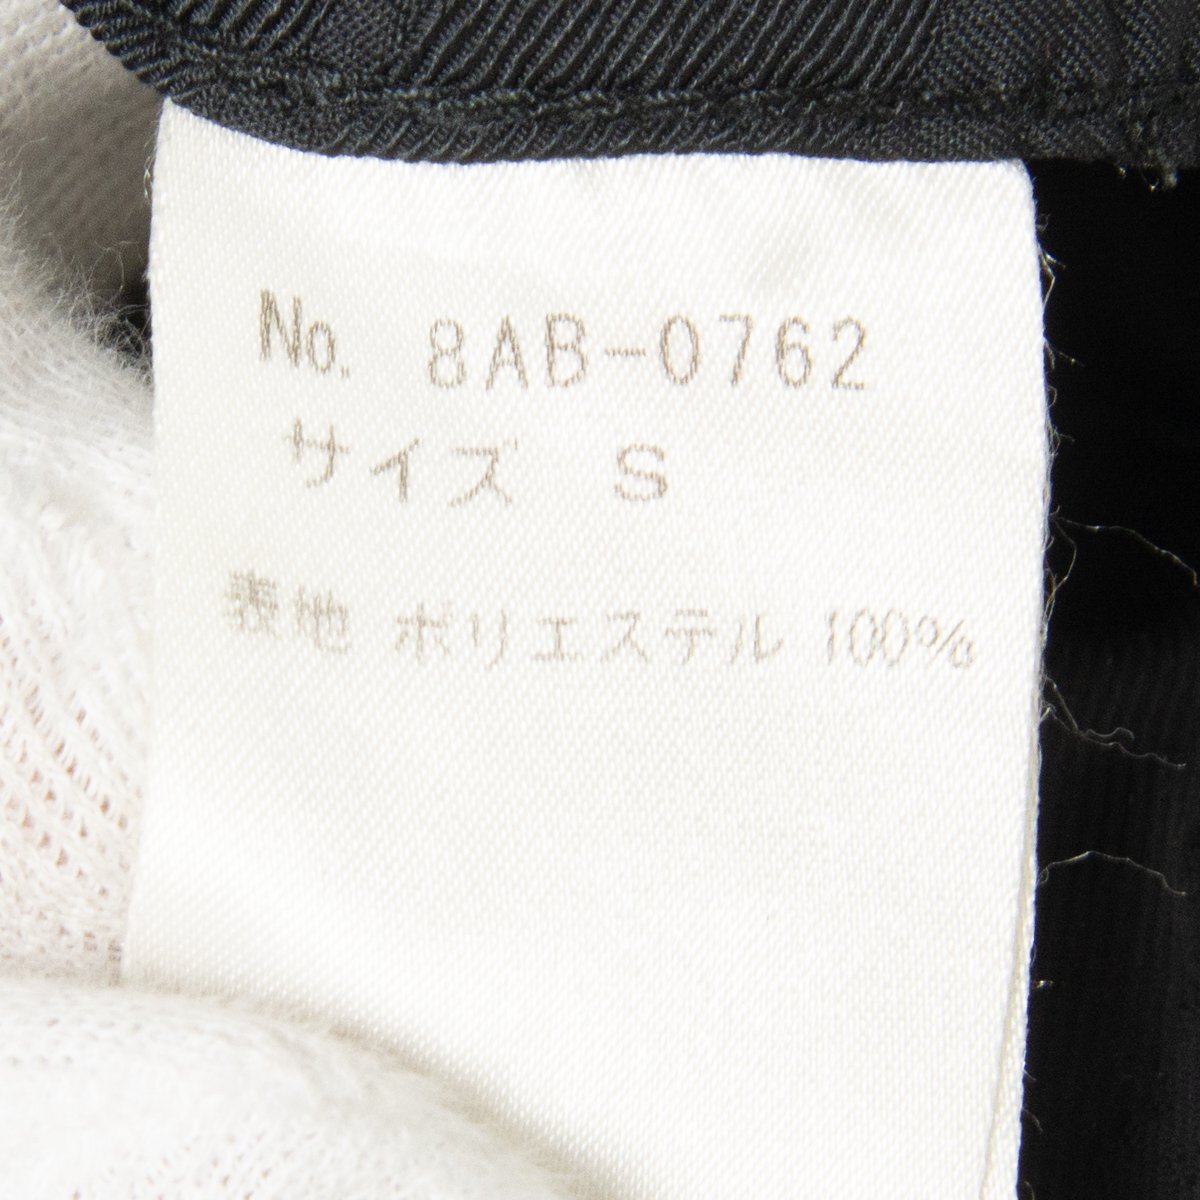 OZONE ROCKS озон блокировка s сделано в Японии длинный рукав жакет перо ткань tops черный чёрный полиэстер S Zip выше женский мужской Like 